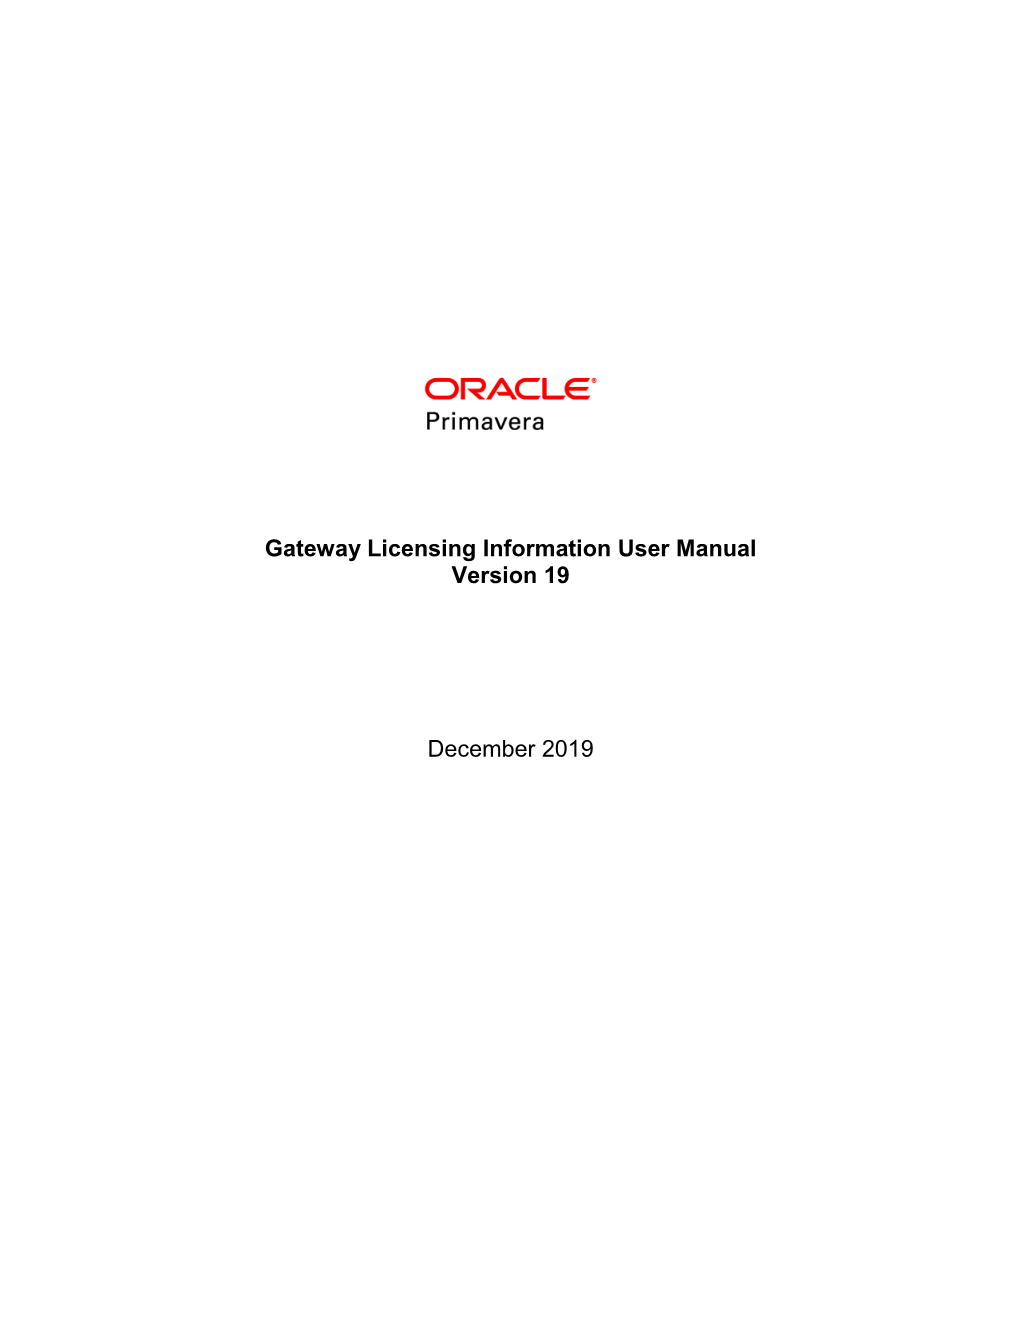 Gateway Licensing Information User Manual Version 19